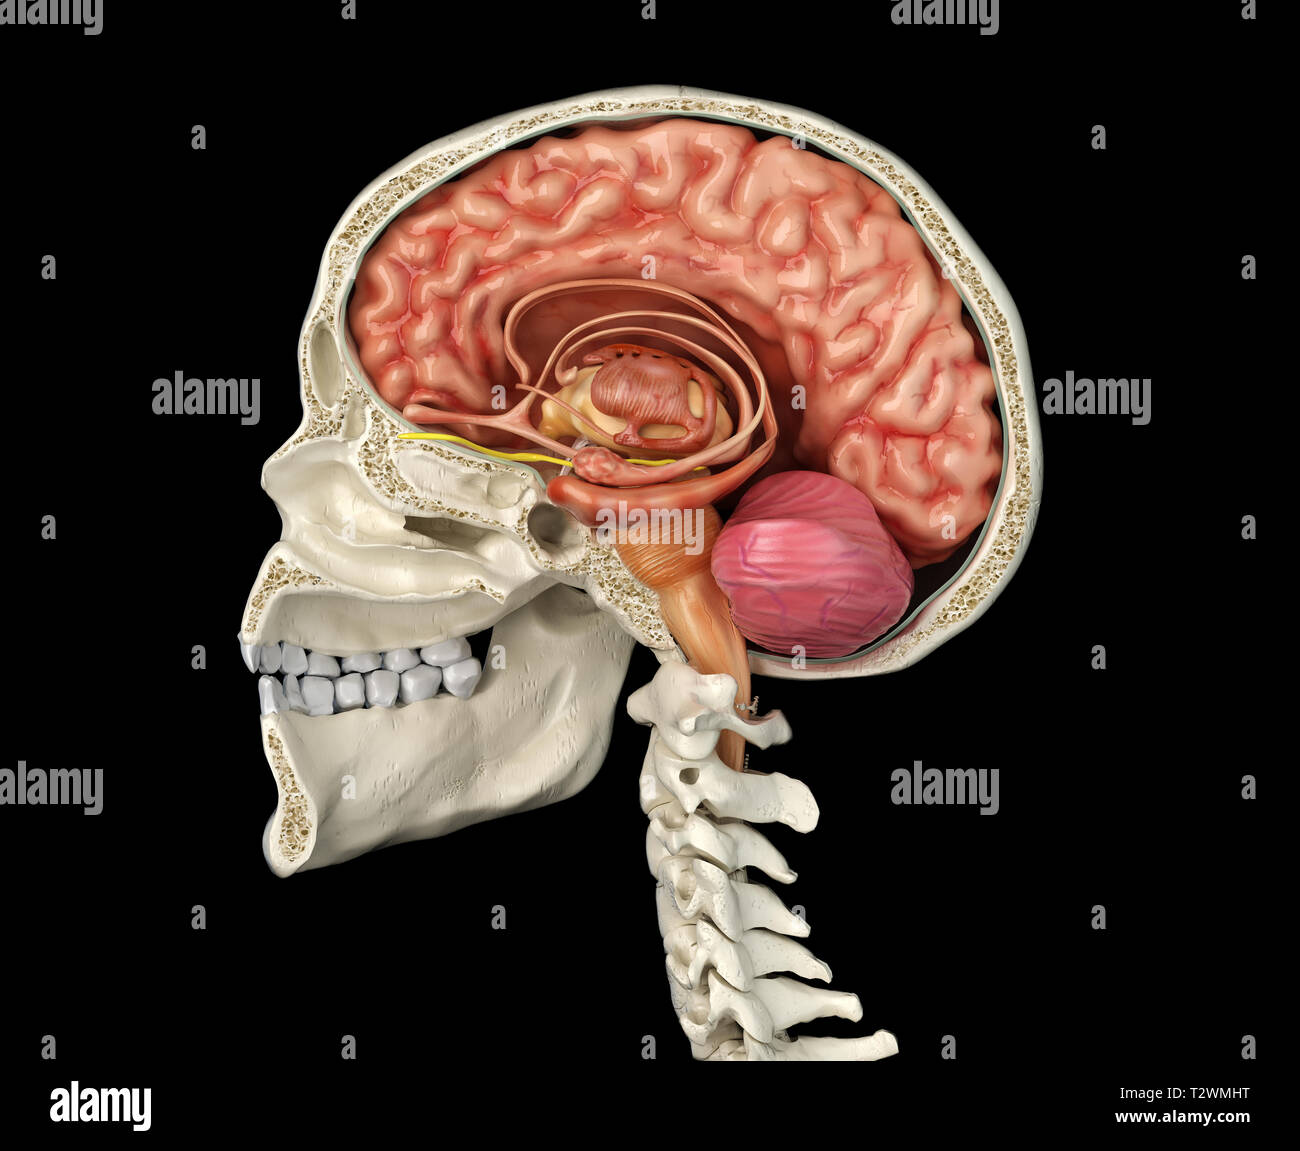 Crâne humain sagittal cross-section avec cerveau. Vue latérale sur fond noir. Banque D'Images